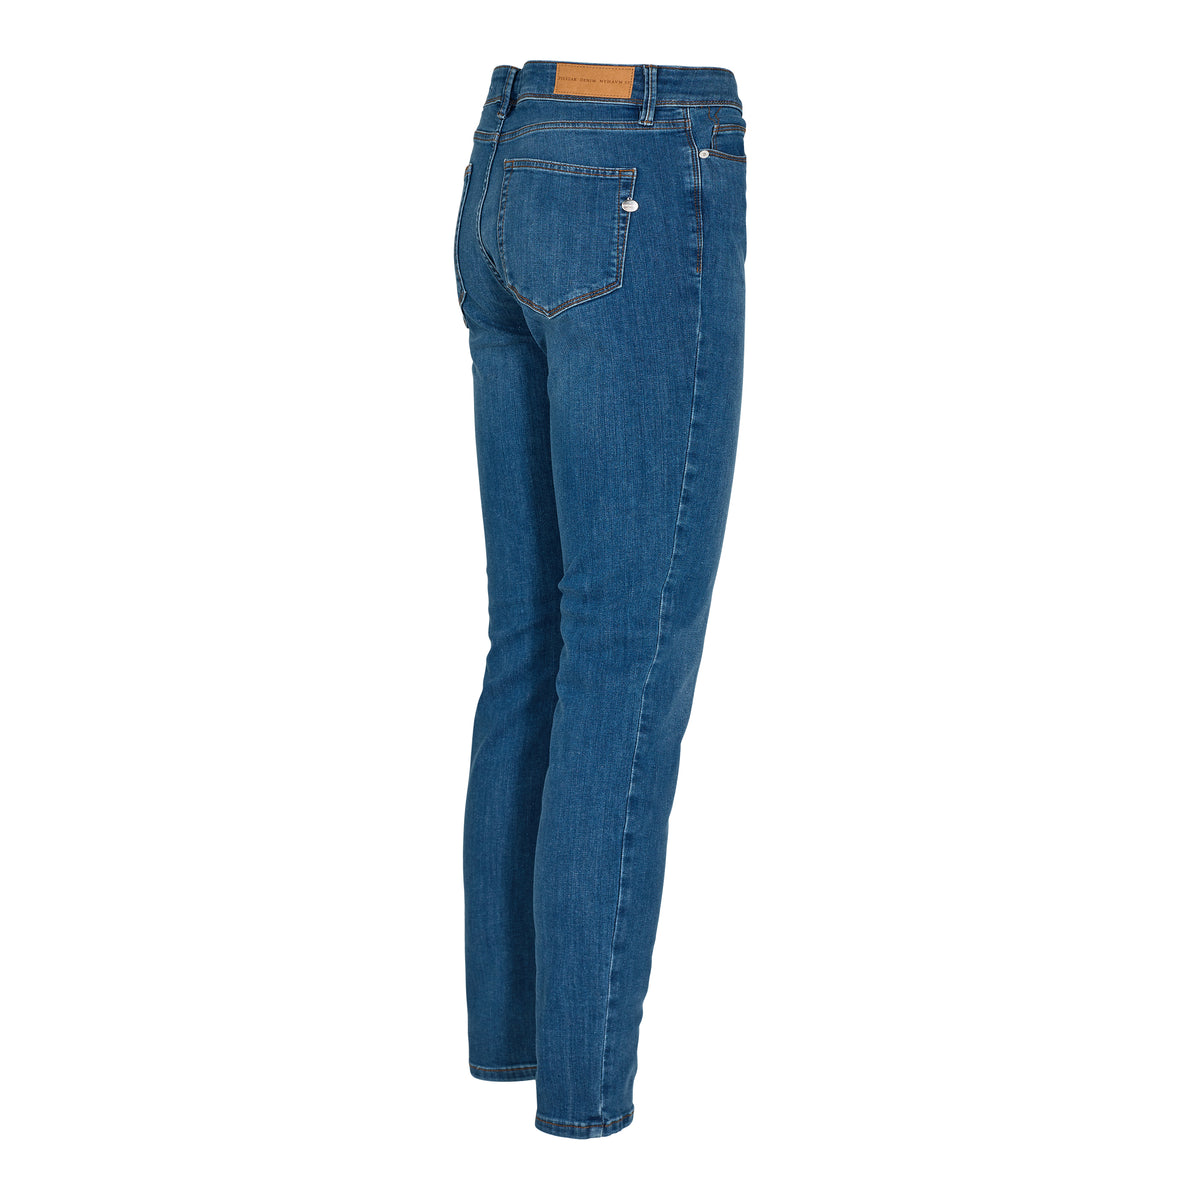 Pieszak Jeans | Poline | Original Blue | Økologisk svanemærket